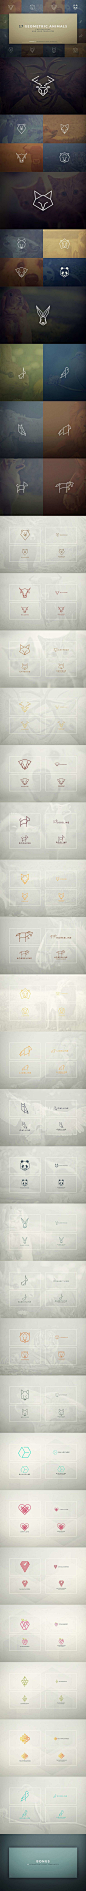 2117毛笔 书法 手写 字体设计 logo字体 创意字形参考 排版图形 品牌字体 纯文字 中国风 英文 阿拉伯 数字17种高品质的矢量几何动物logo和icon